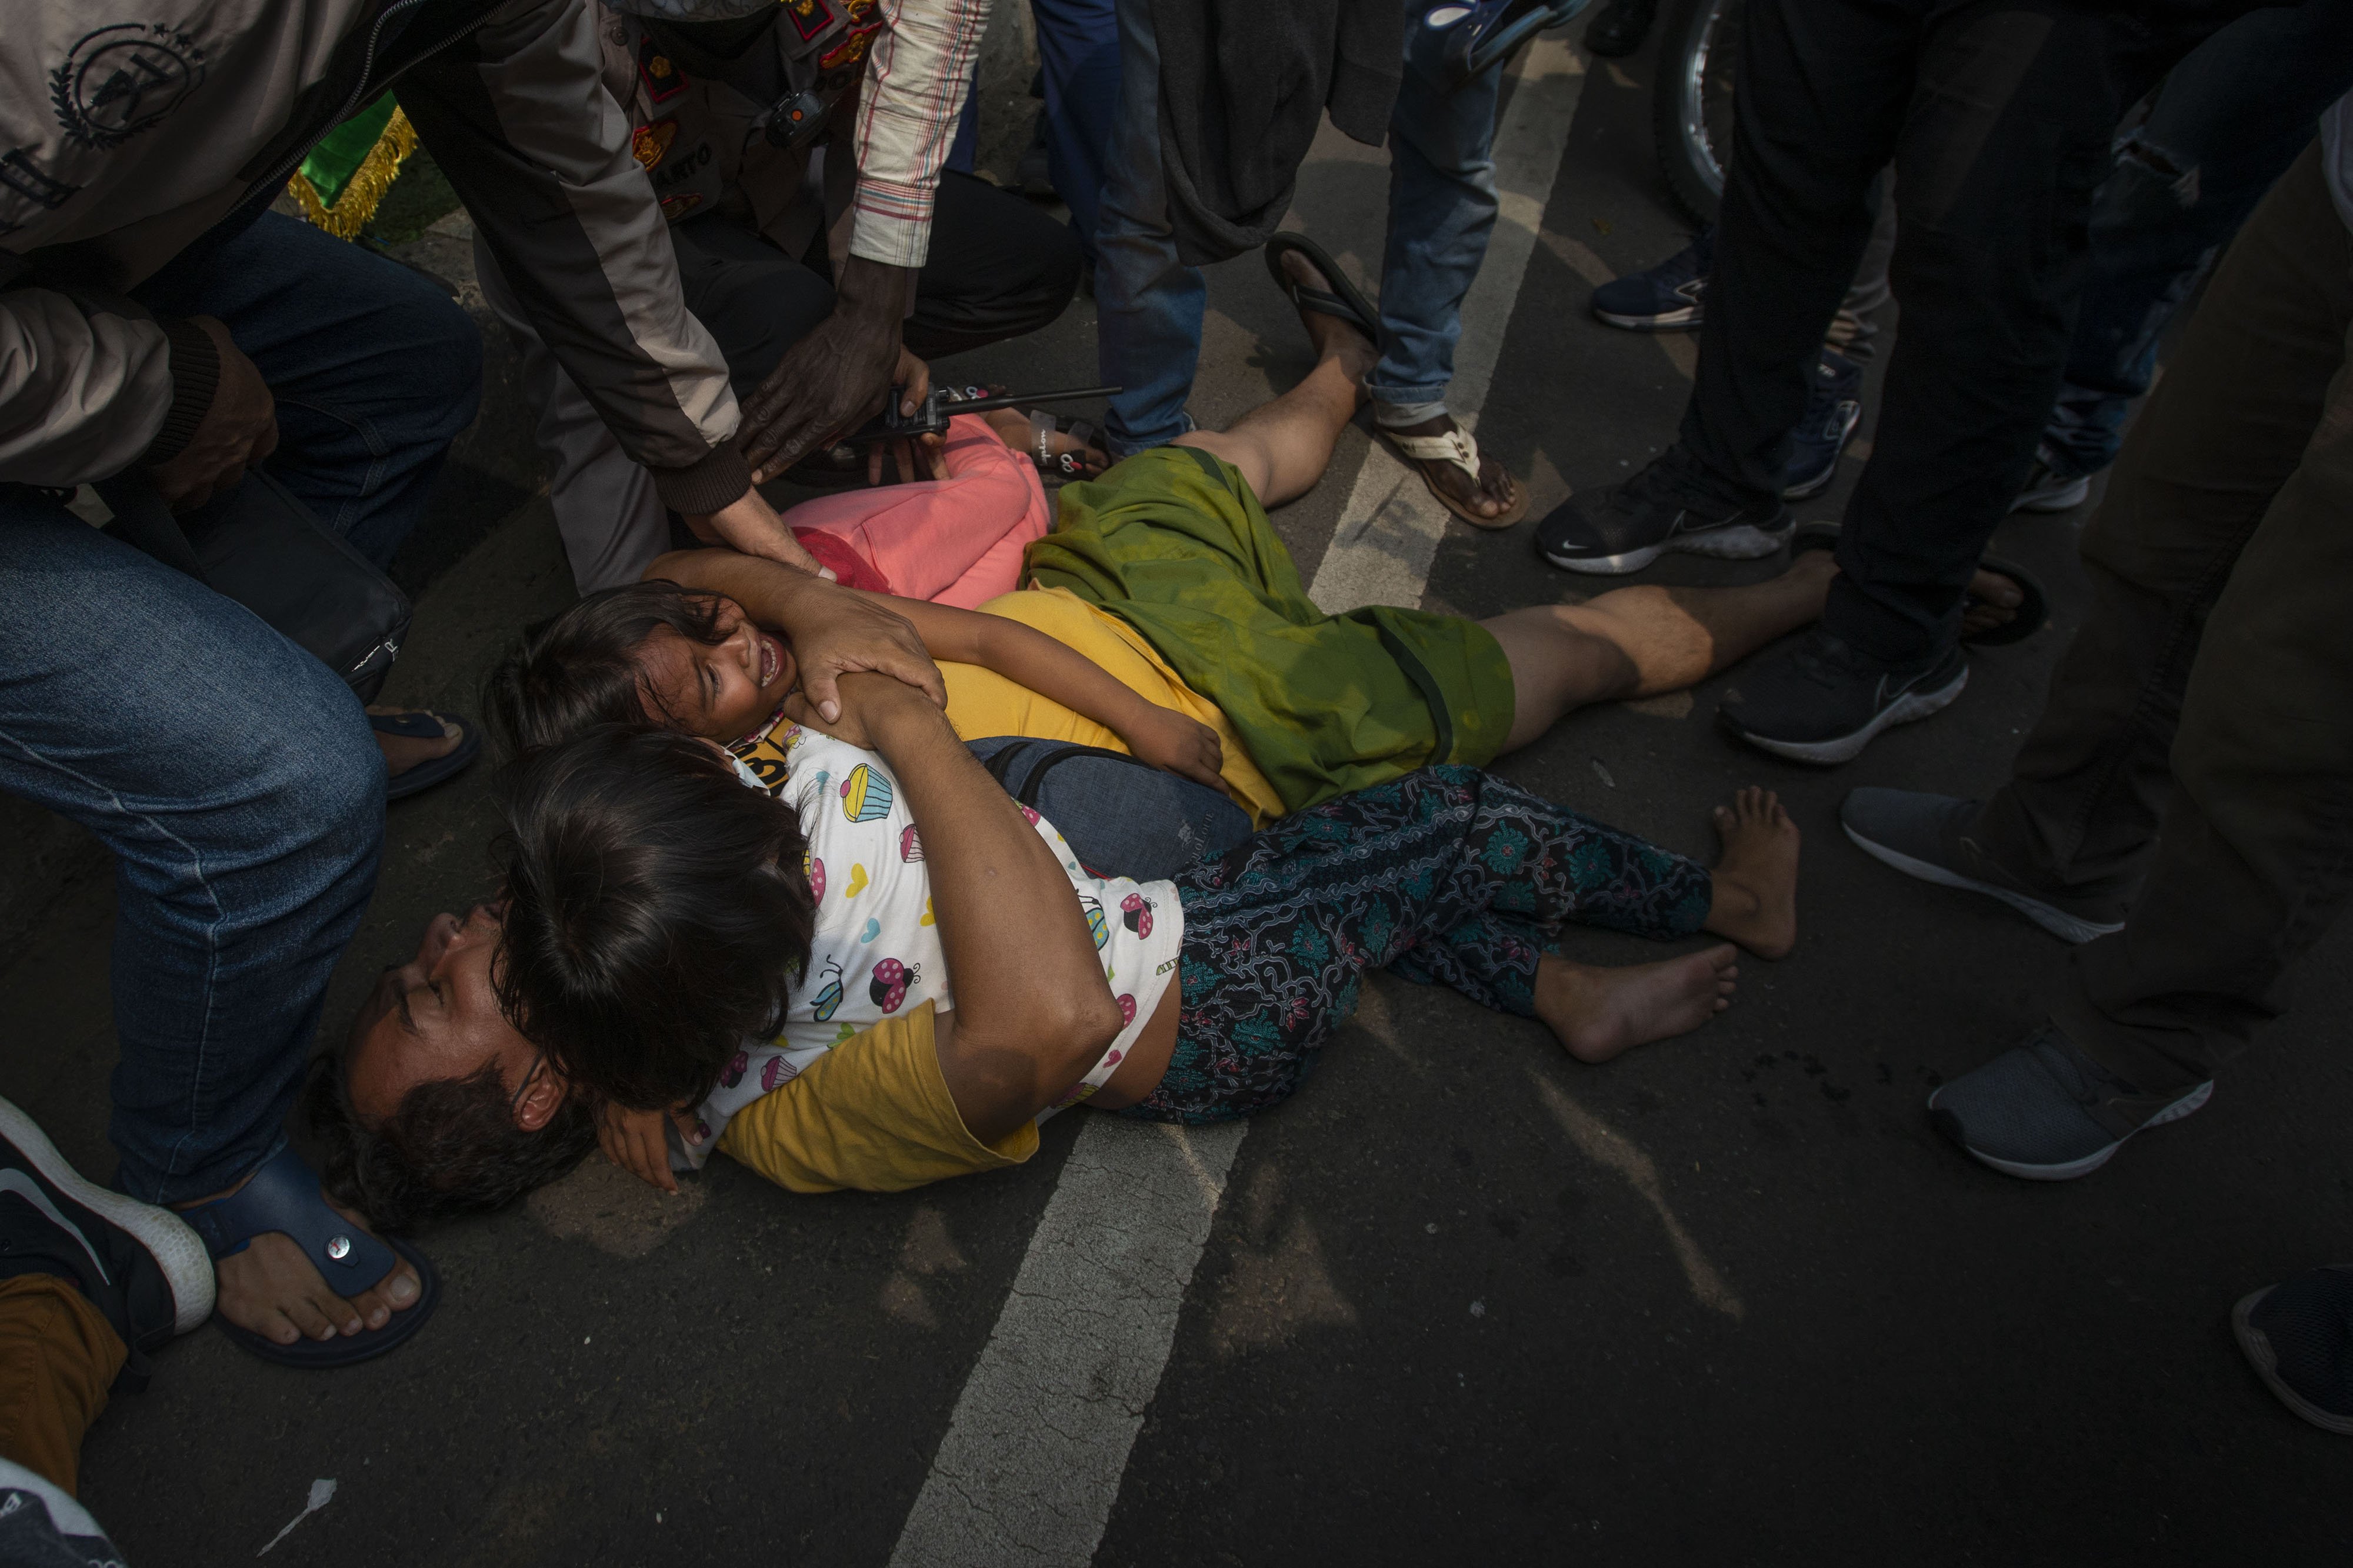 Pencari suaka asal Afghanistan berbaring dengan anaknya di jalan saat polisi membubarkan unjuk rasa di depan Kantor Komisi Tinggi PBB untuk Pengungsi (UNHCR), Kebon Sirih, Jakarta, Selasa (24/8/2021). Aksi menuntut kejelasan status penempatan pencari suaka di negara tujuan tersebut dibubarkan polisi karena memicu kerumunan di tengah pelaksanaan Pemberlakuan Pembatasan Kegiatan Masyarakat (PPKM). ANTARA FOTO/Aditya Pradana Putra/foc.